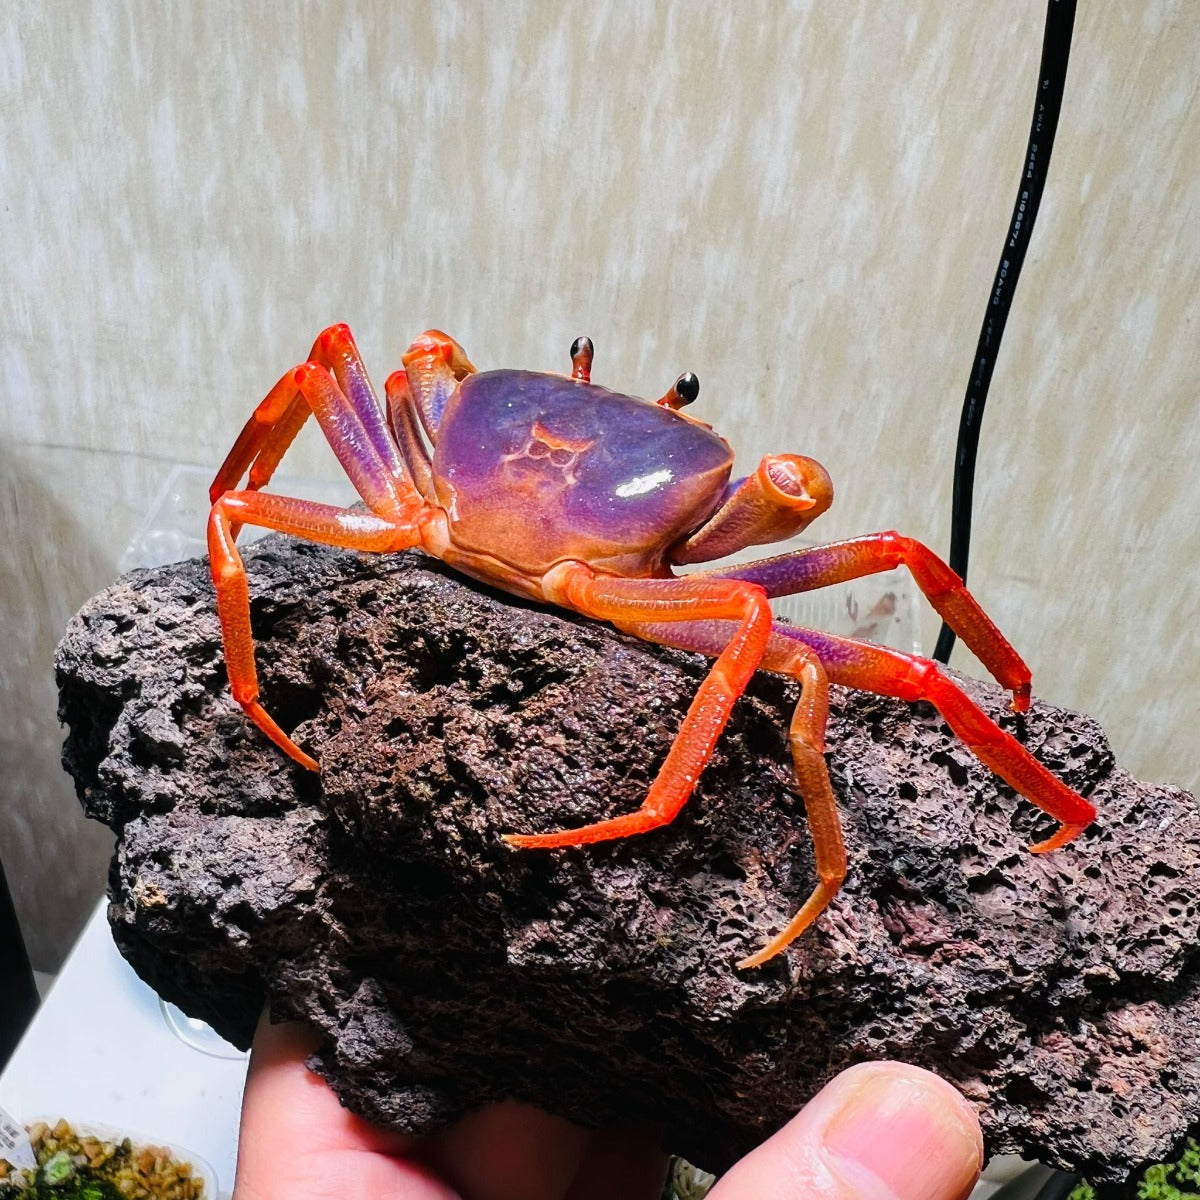 Rainbow Lightning Crab (Tiwaripotamon sp)